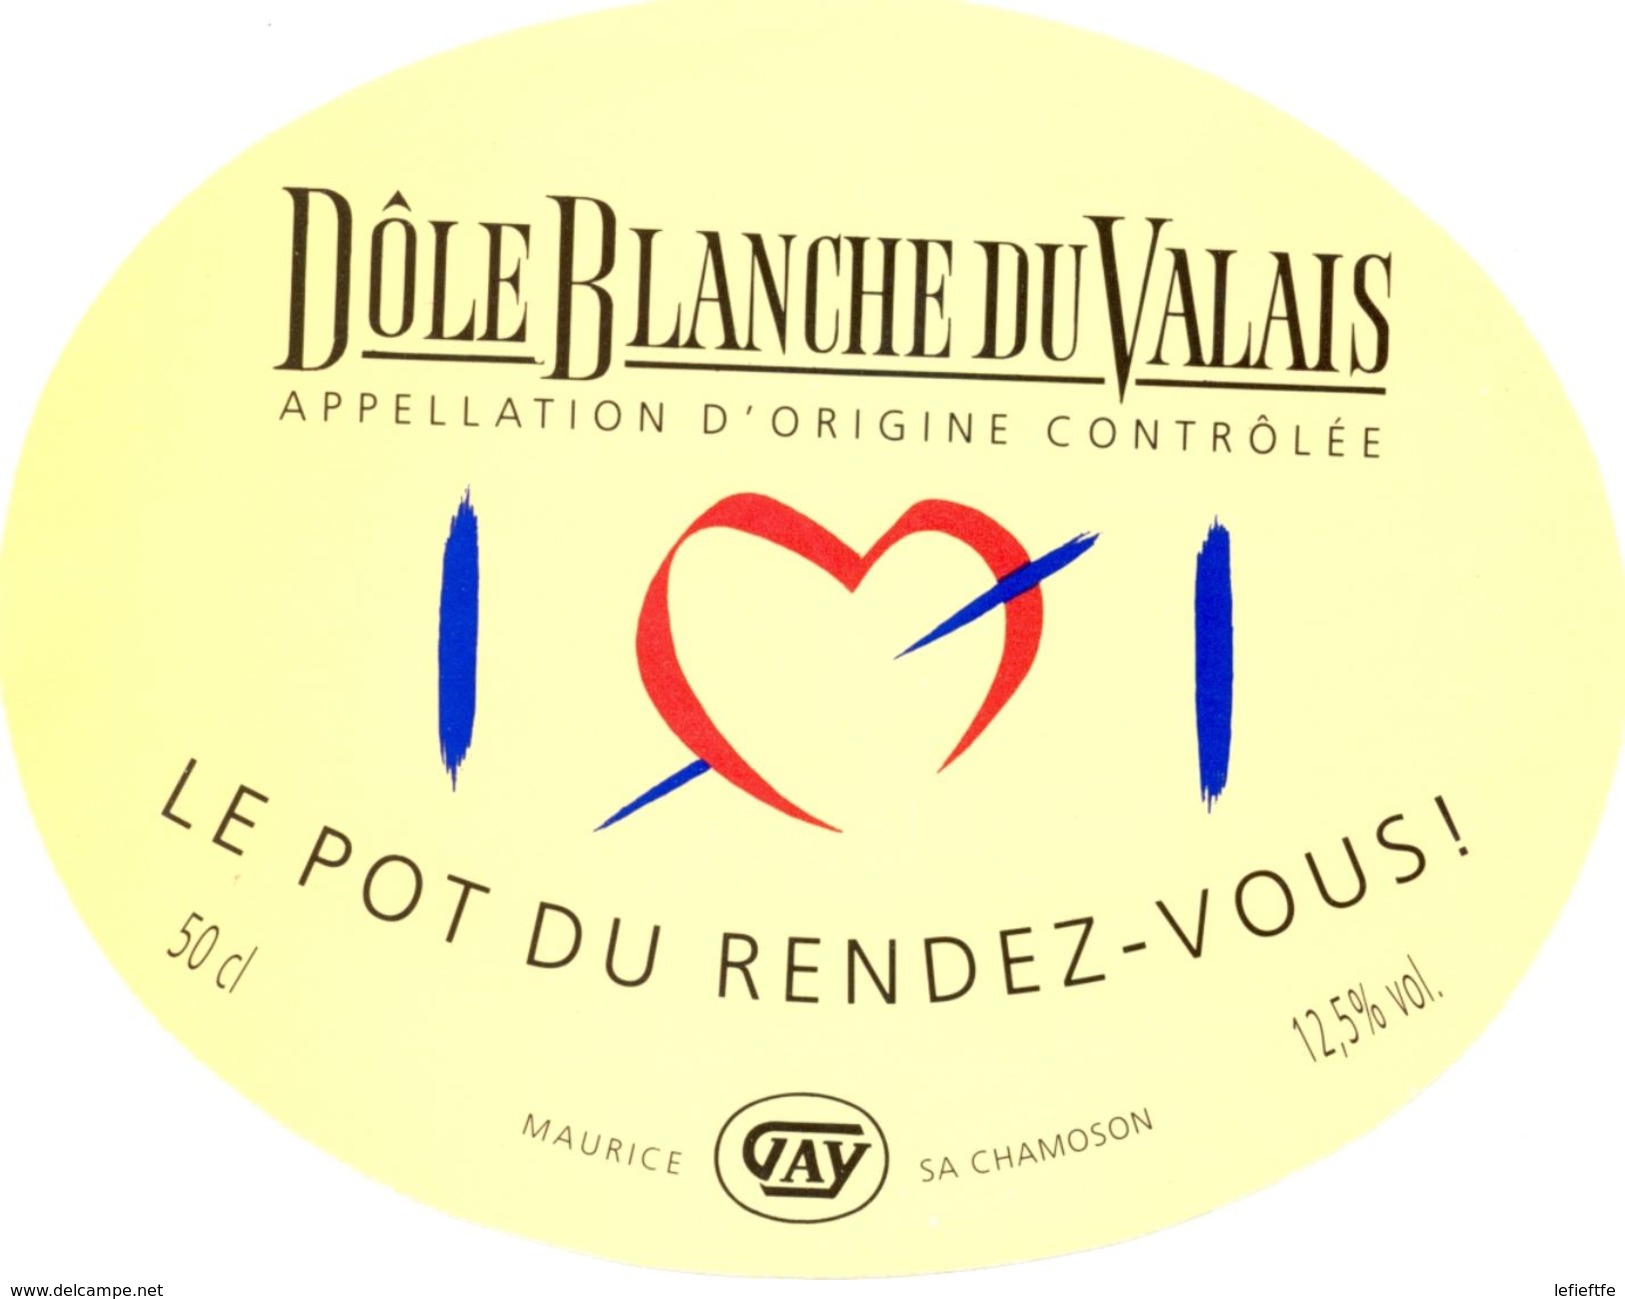 1509 - Suisse - Le Pot Du Rendez-Vous - Dôle Blanche Du Valais - A.O.C.  Maurice Gay - Chamoson - Vino Bianco